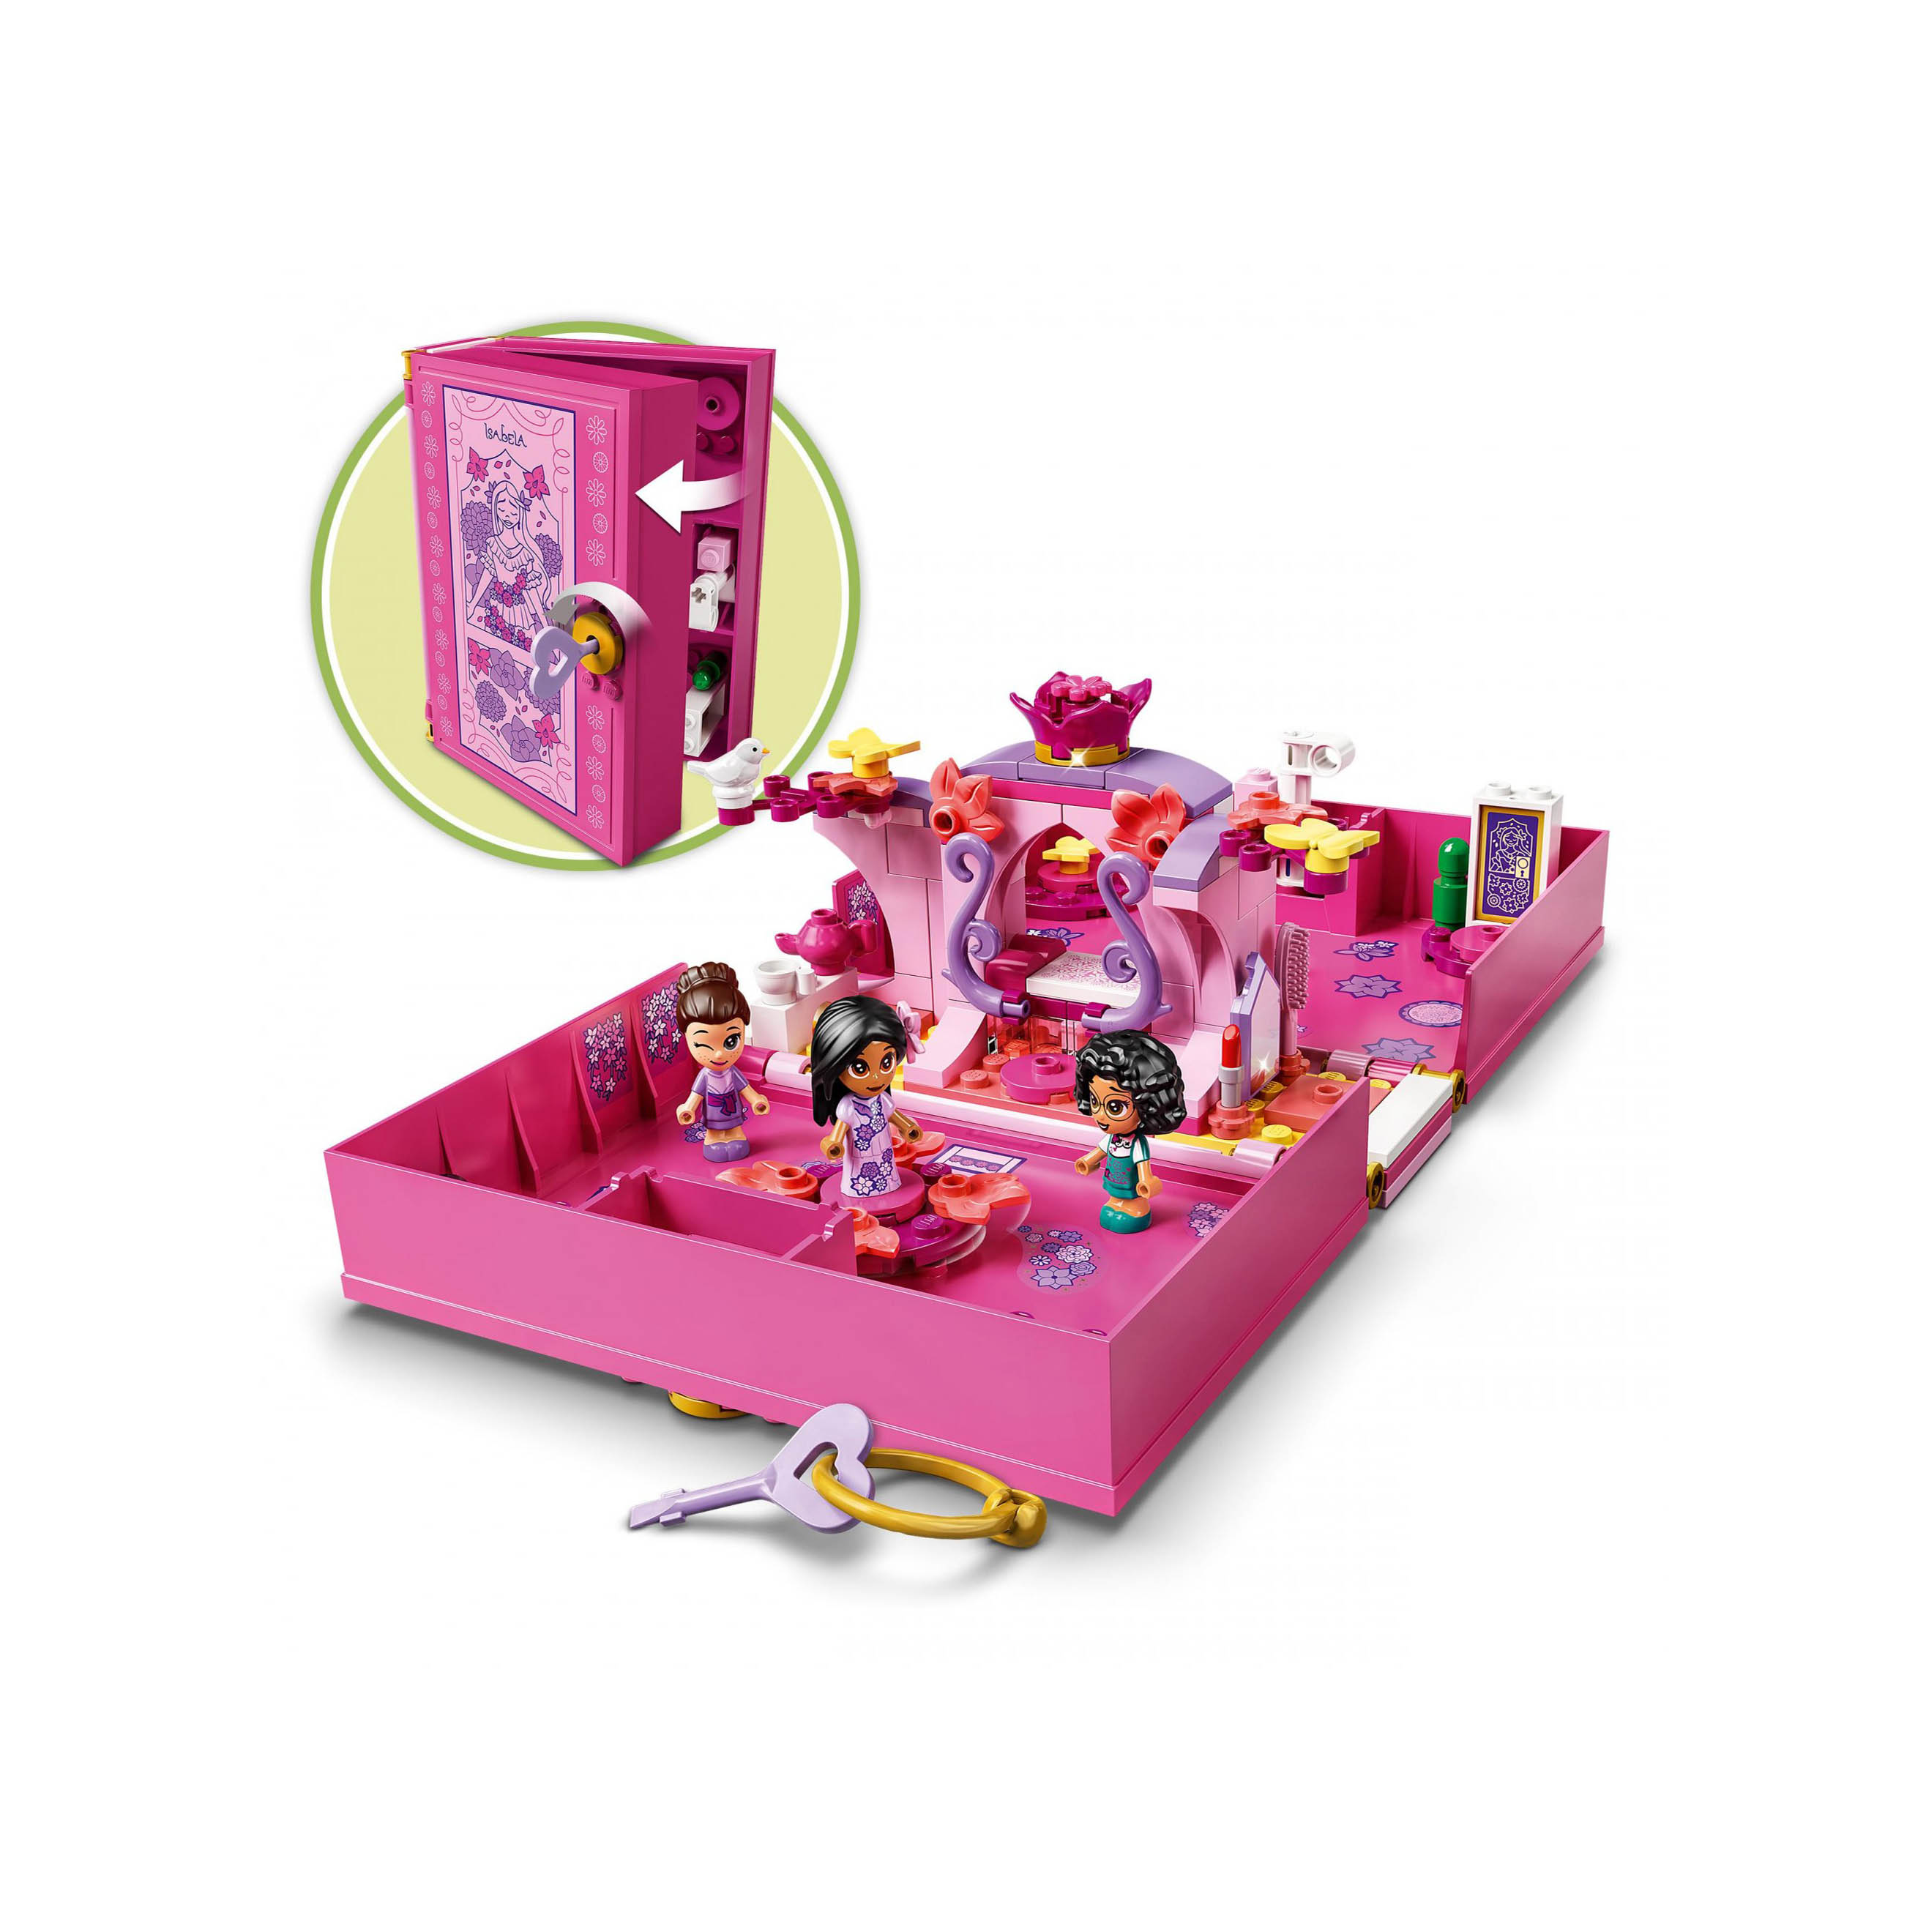 LEGO Disney Princess la Porta Magica di Isabela, Giochi per Bambini dai 5 Anni d 43201, , large